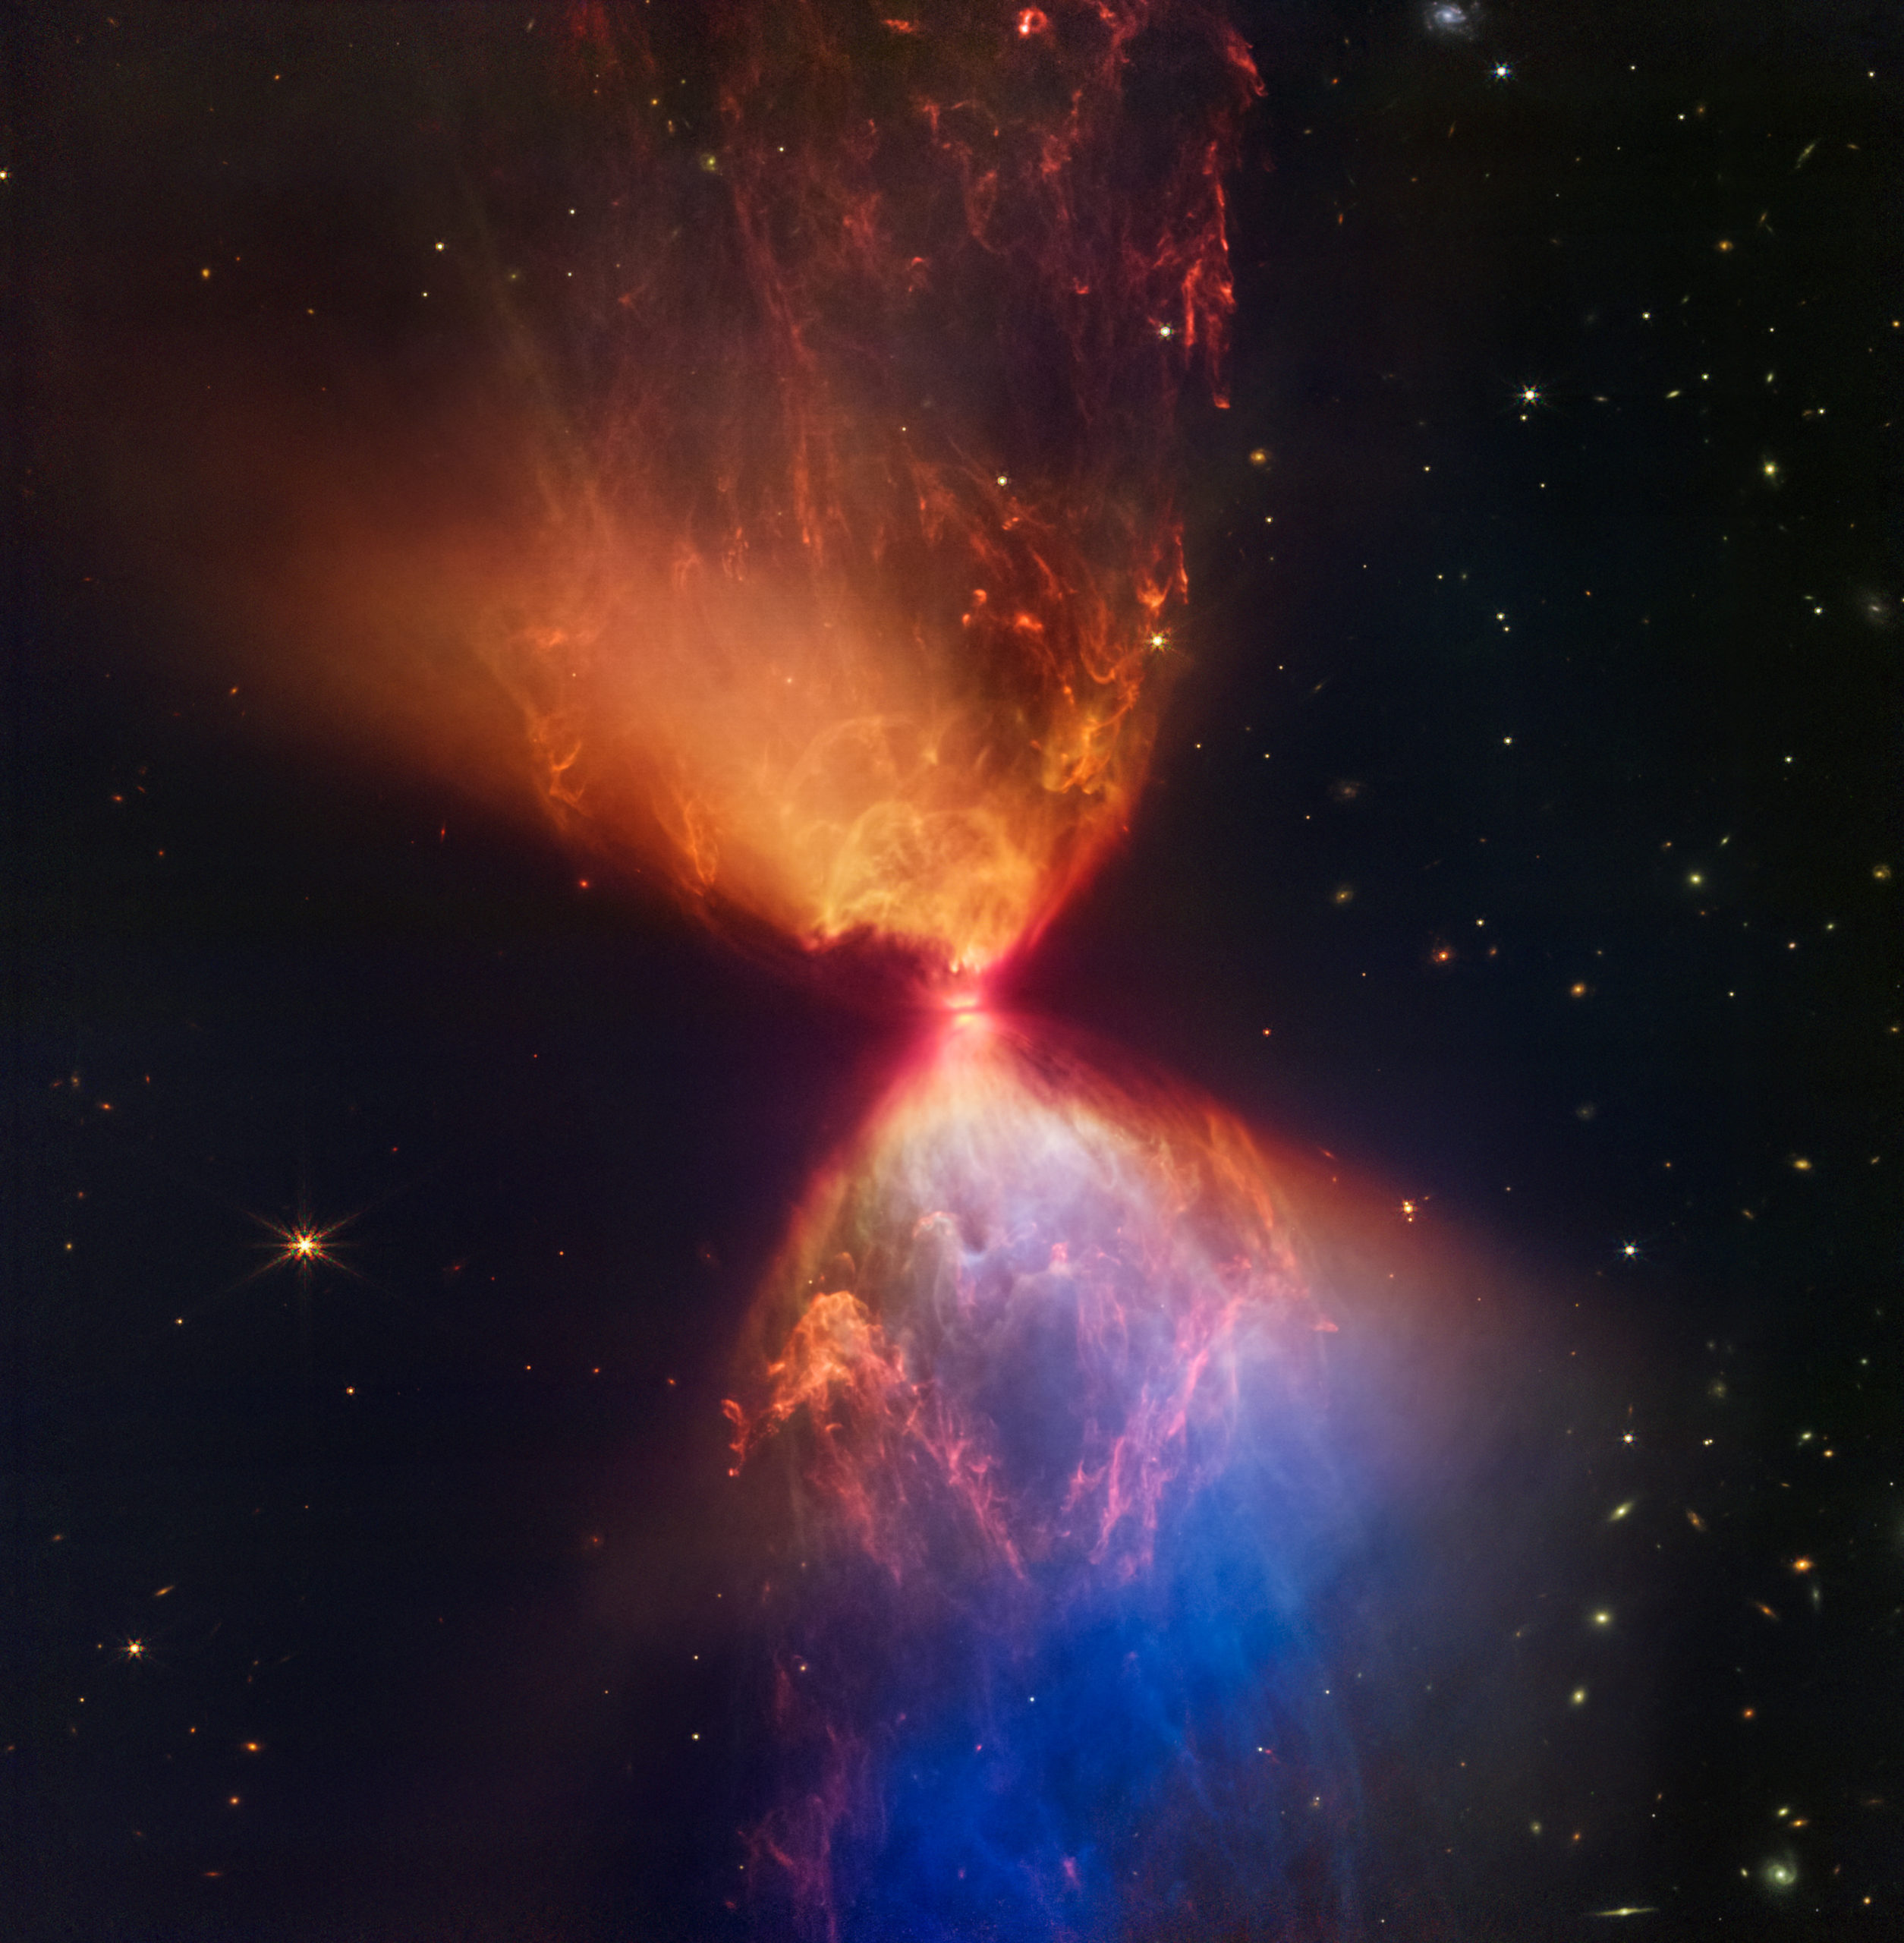 Τηλεσκόπιο James Webb: Εντυπωσιακή εικόνα νέφους σε σχήμα κλεψύδρας κατά τον σχηματισμό νέου άστρου